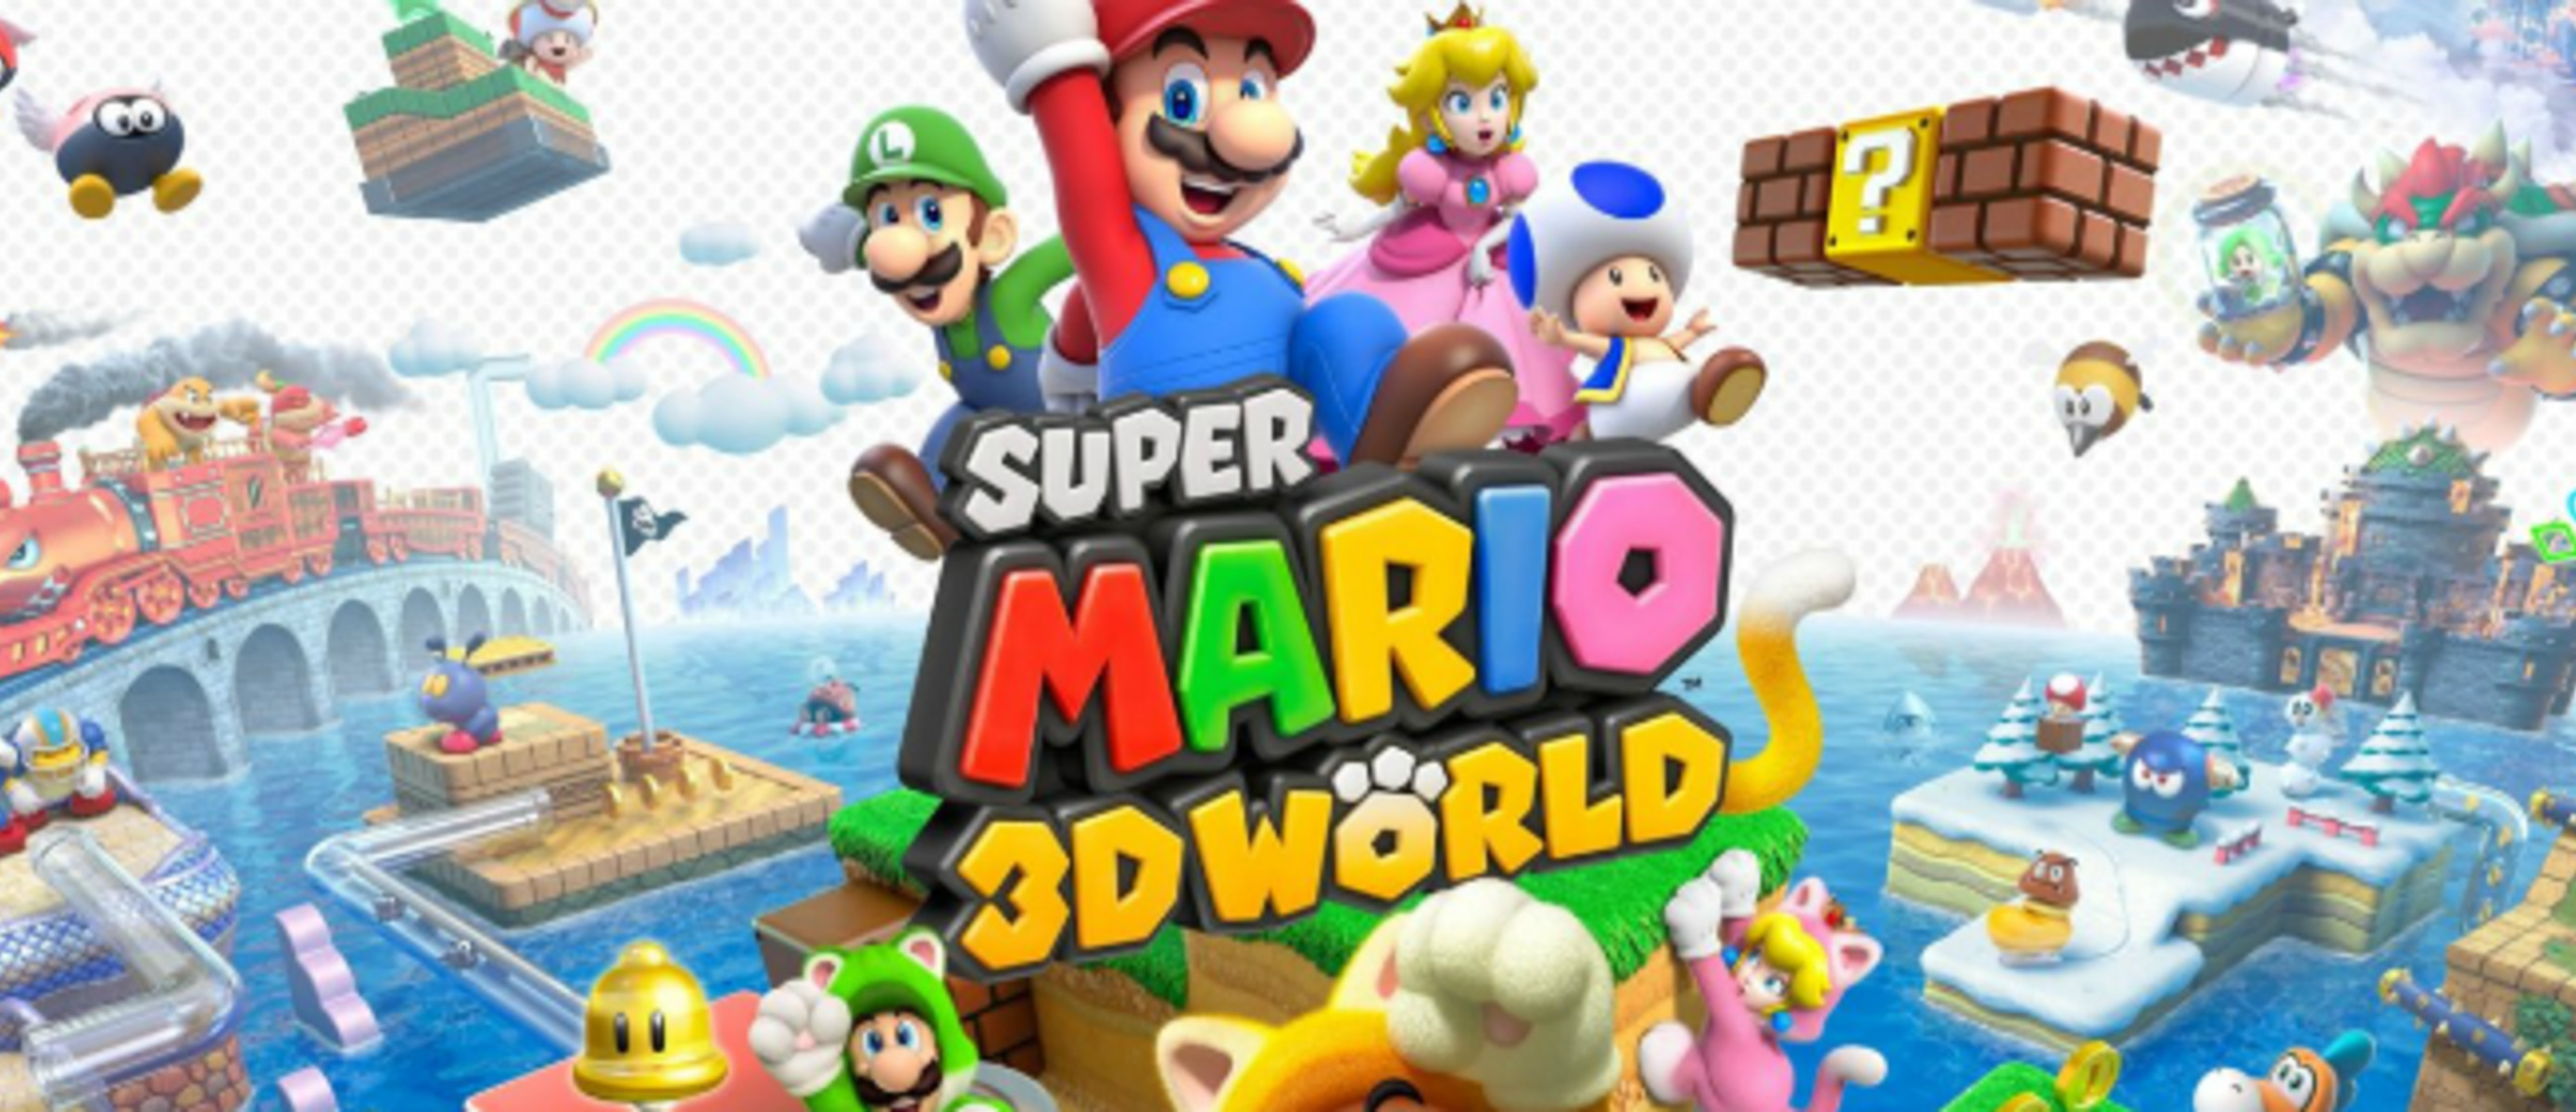 Super mario 3d world bowsers. Super Mario 3d World Nintendo Switch. Super Mario 3d World ps4. Super Mario 3d World картридж.